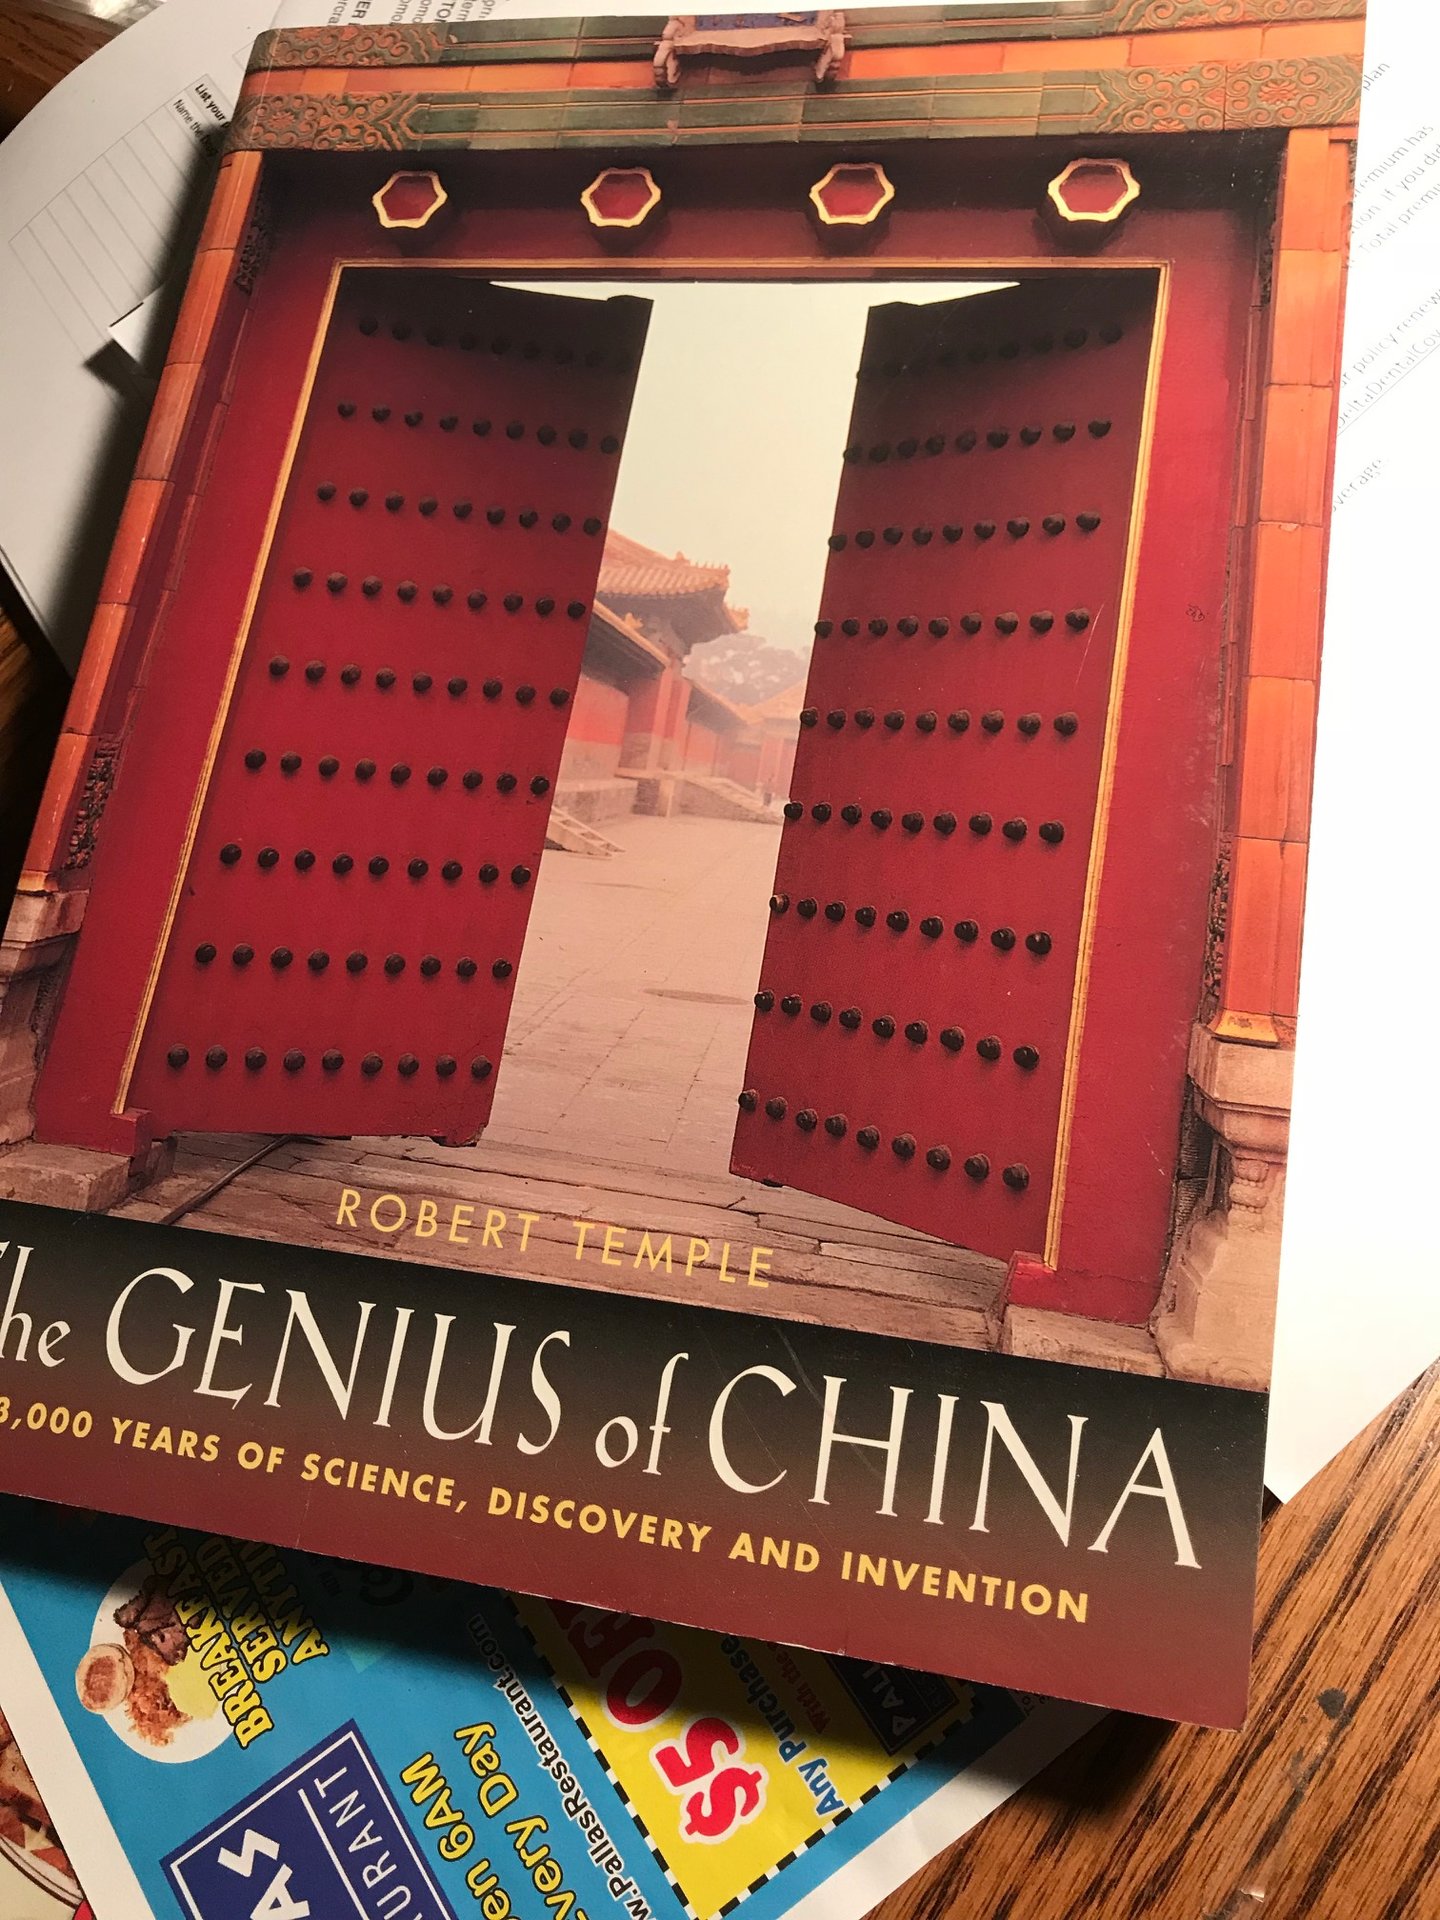 Genius of China book pic.jpg